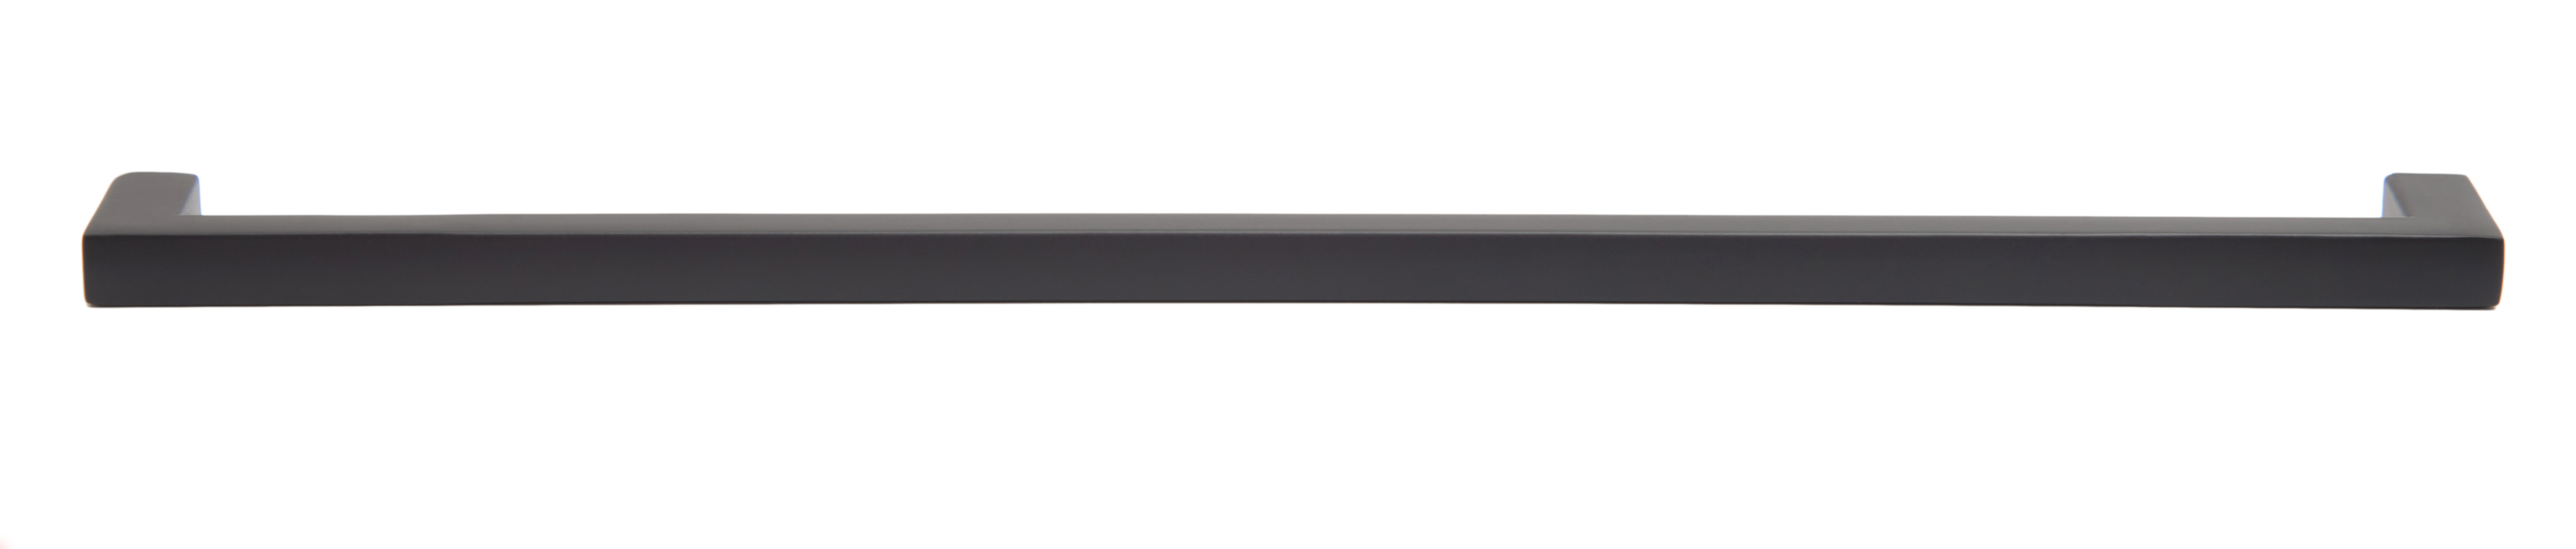 Ручка мебельная скоба 320мм черная матовая RS043BL.4/320 Boyard / 719925-4 / оптом и в розницу / мебельная фурнитура "ЛАВР"